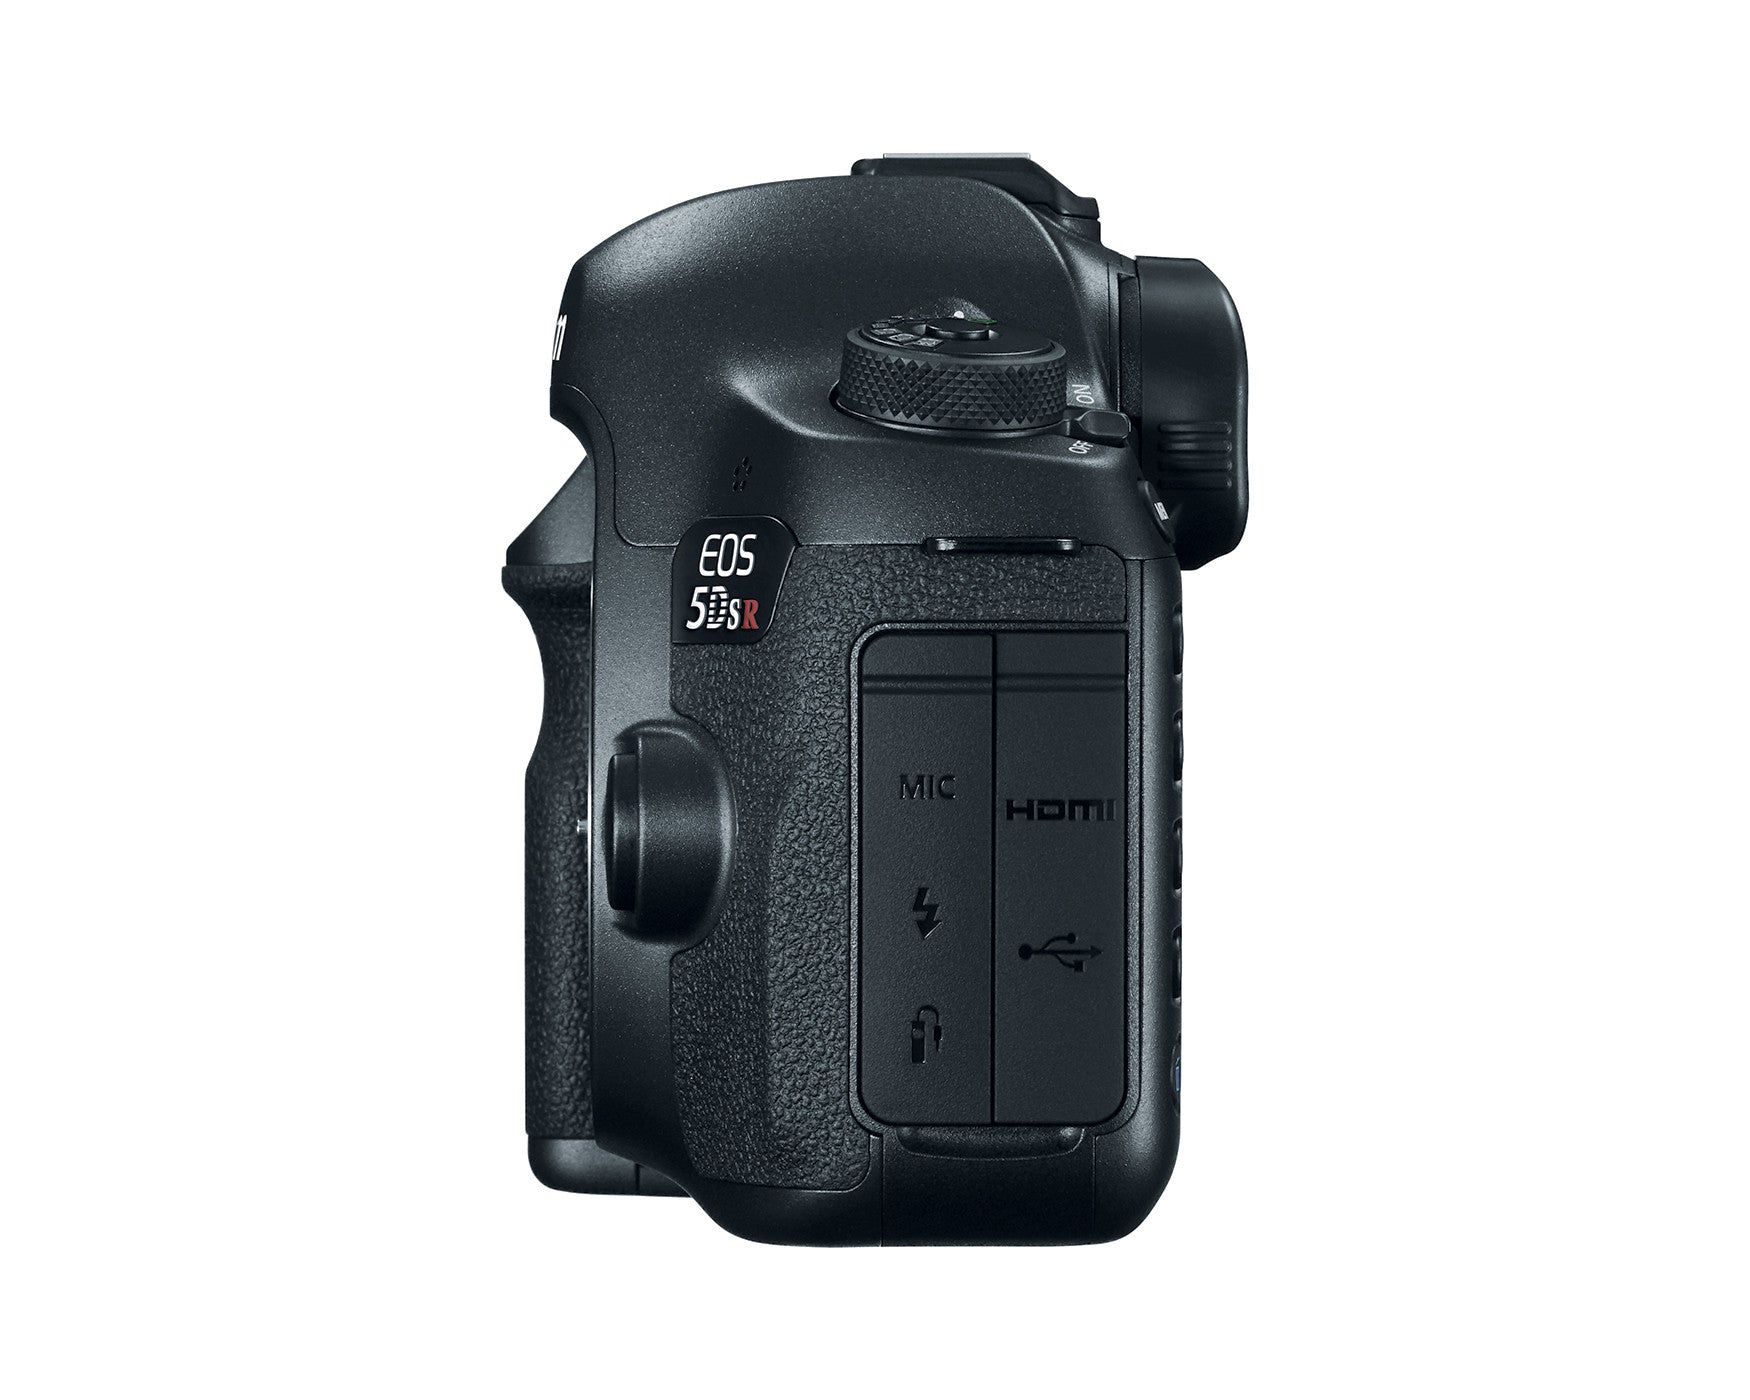 Canon EOS 5DS R Digital Camera Body, camera dslr cameras, Canon - Pictureline  - 2